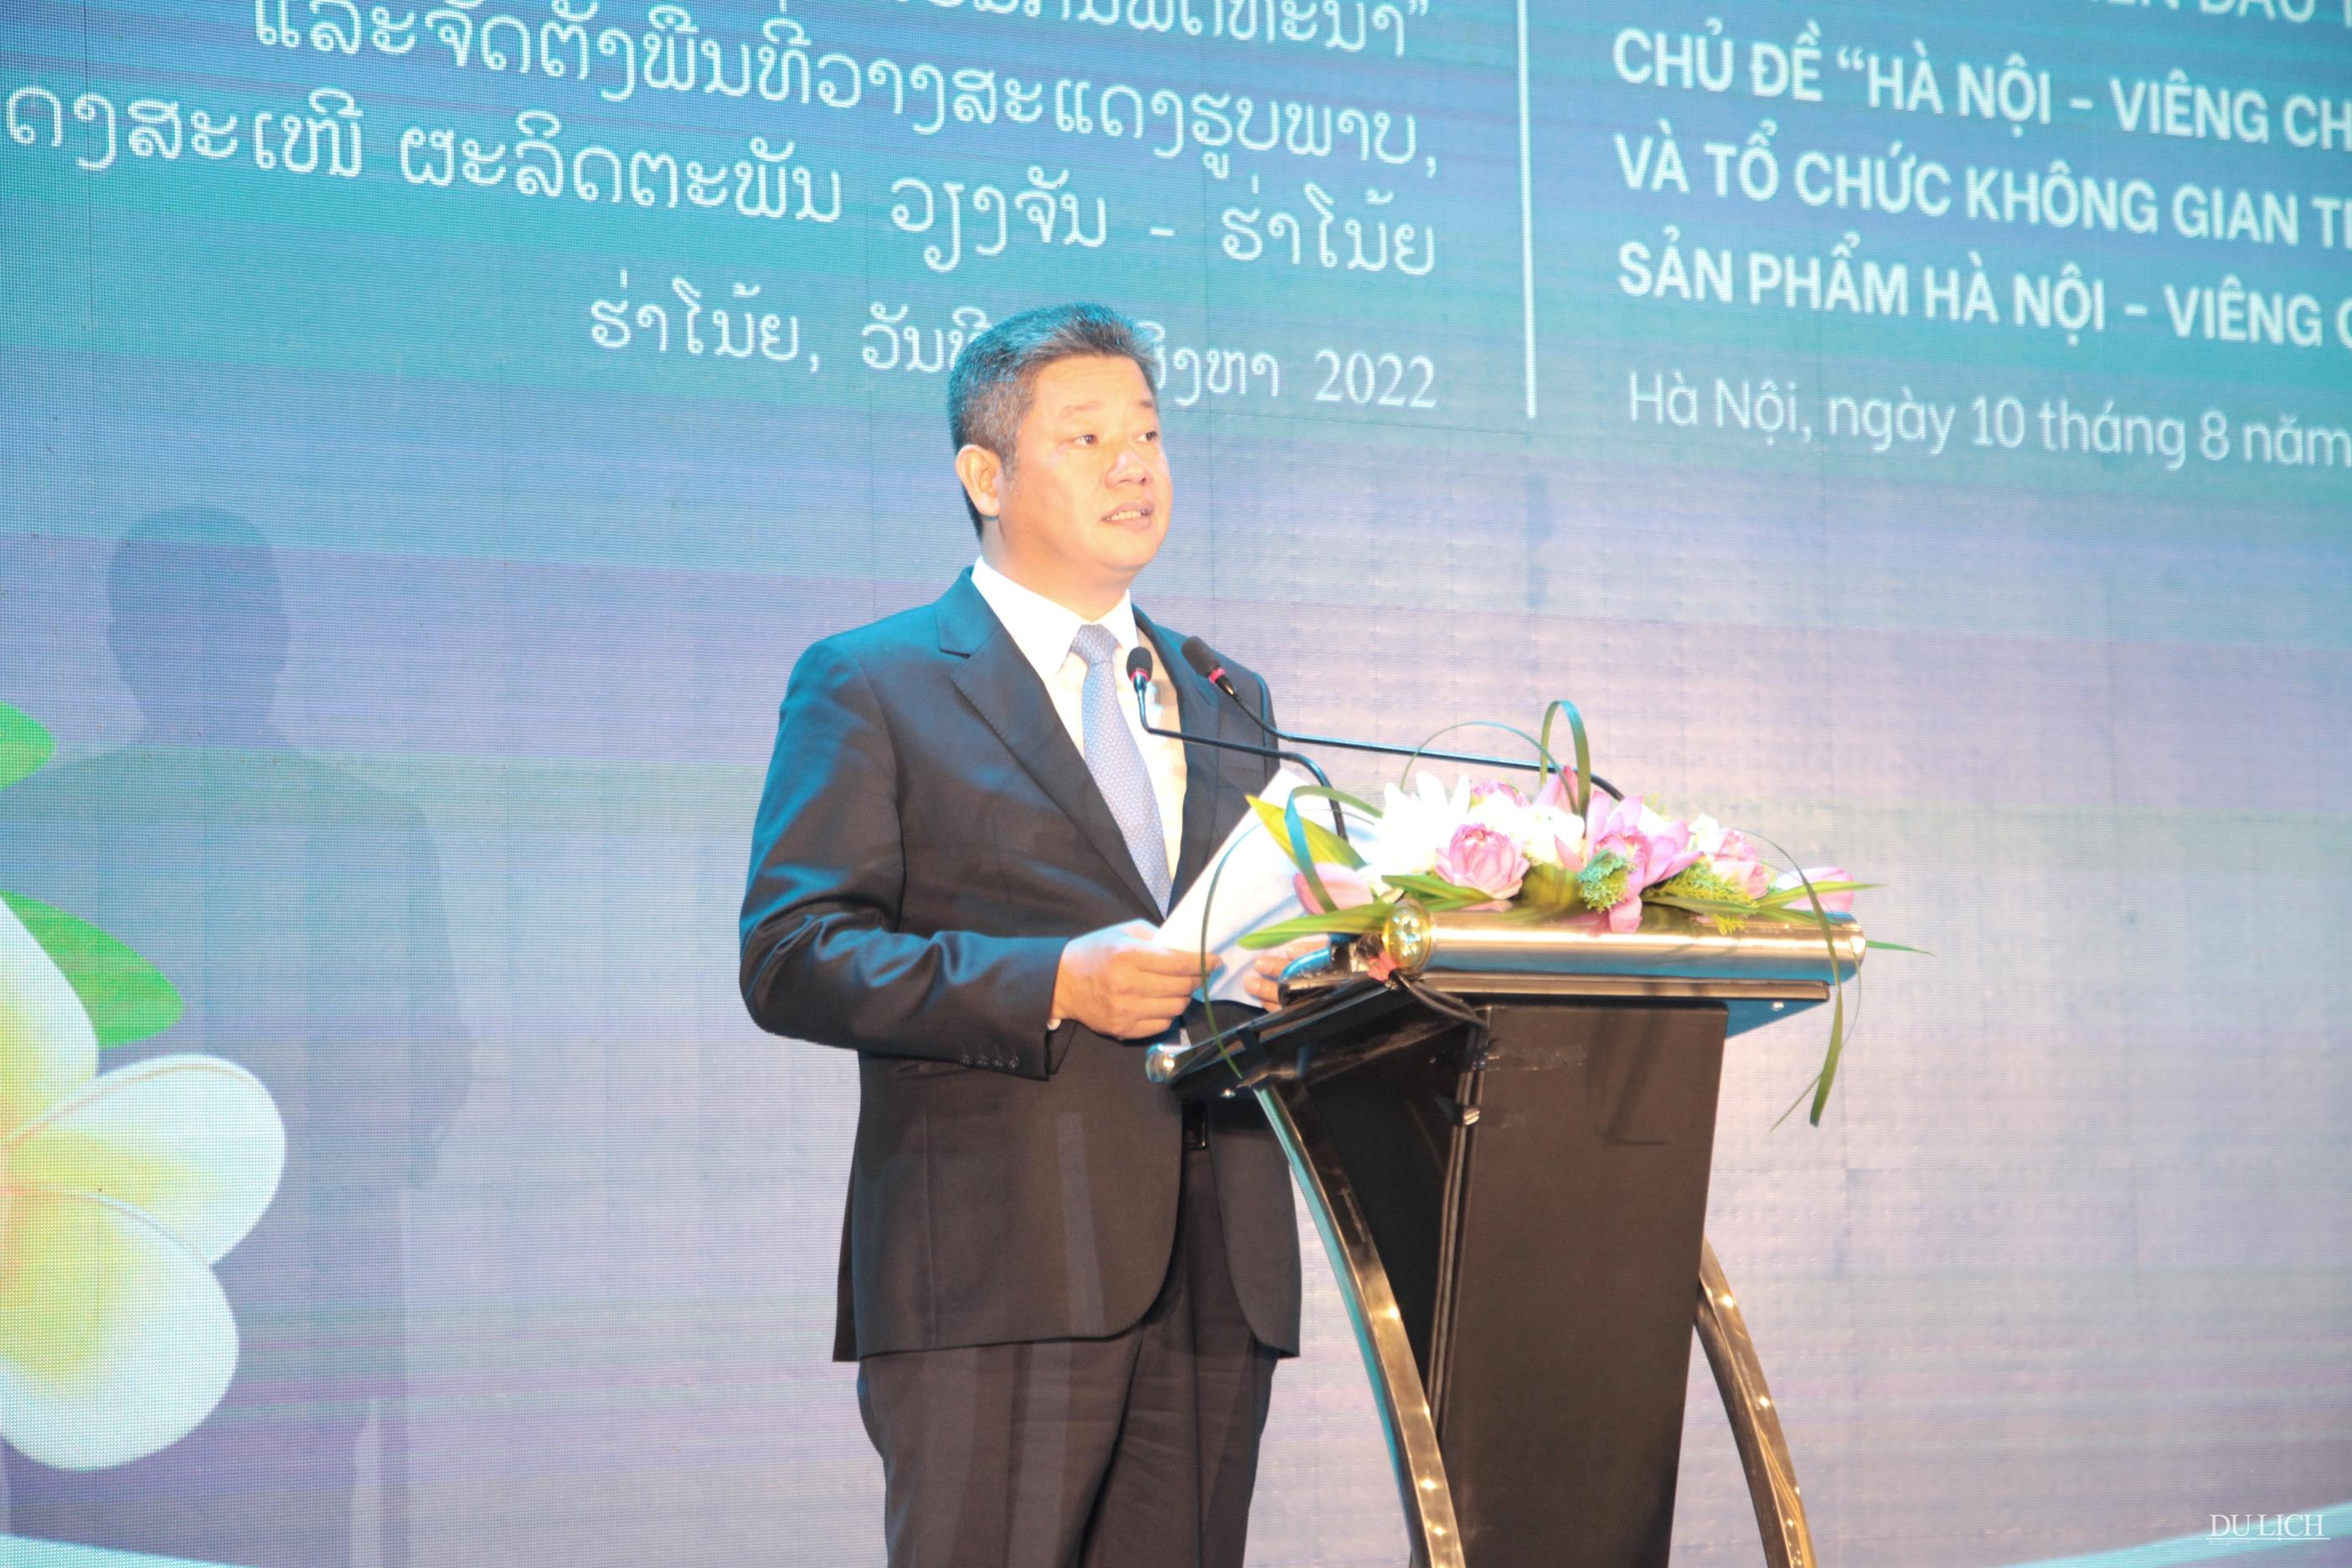 Phó Chủ tịch UBND TP. Hà Nội Nguyễn Mạnh Quyền phát biểu khai mạc Hội nghị